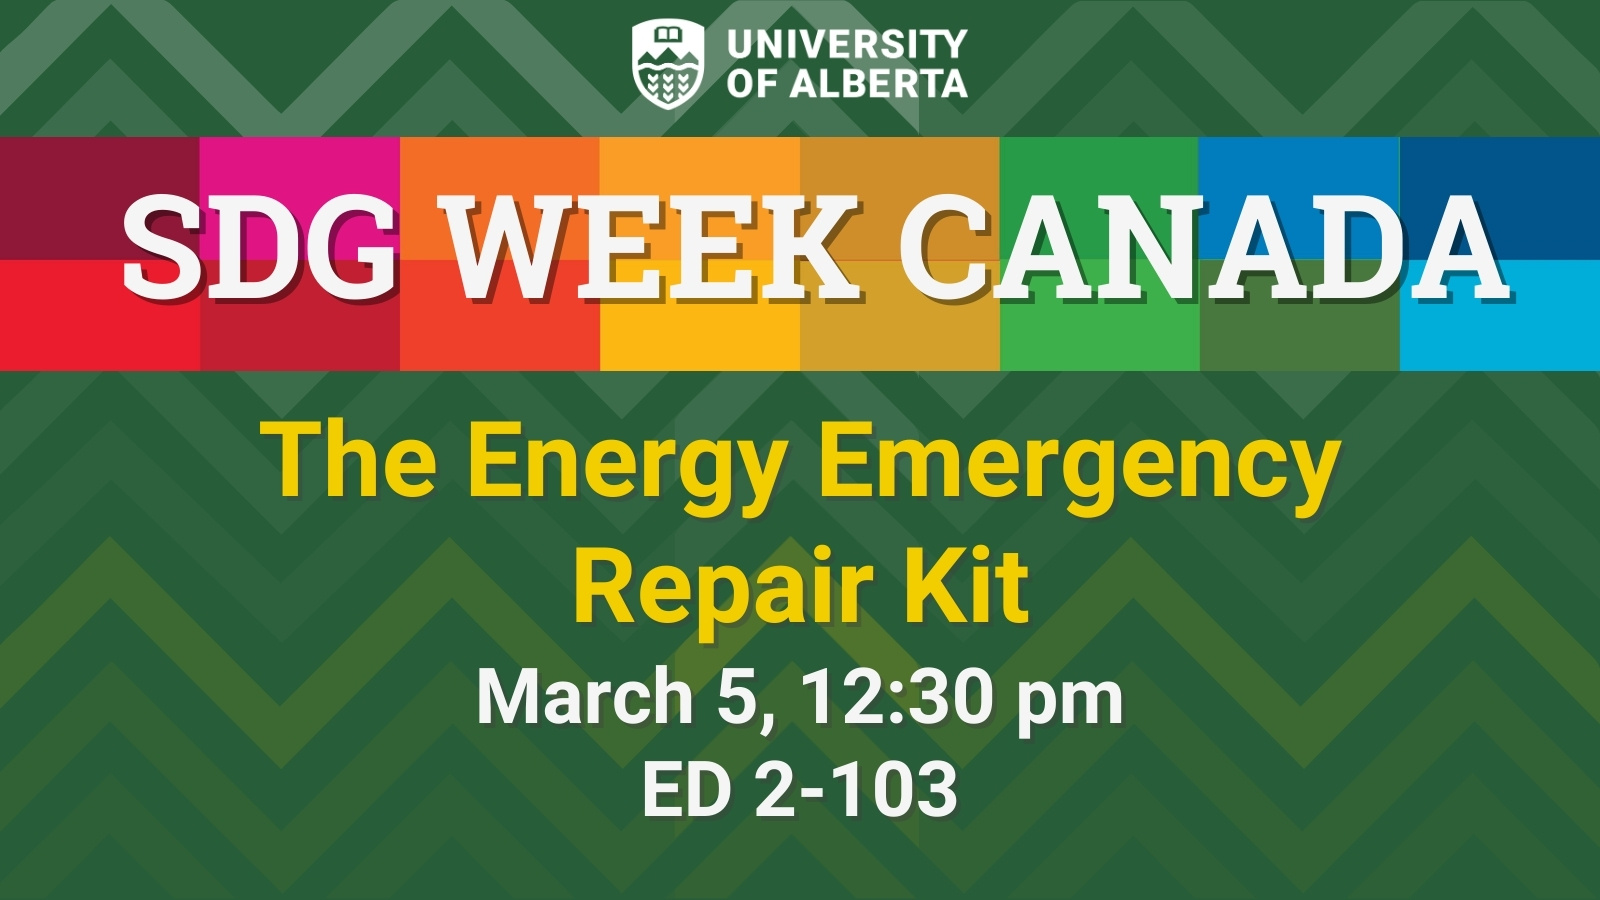 The Energy Emergency Repair Kit